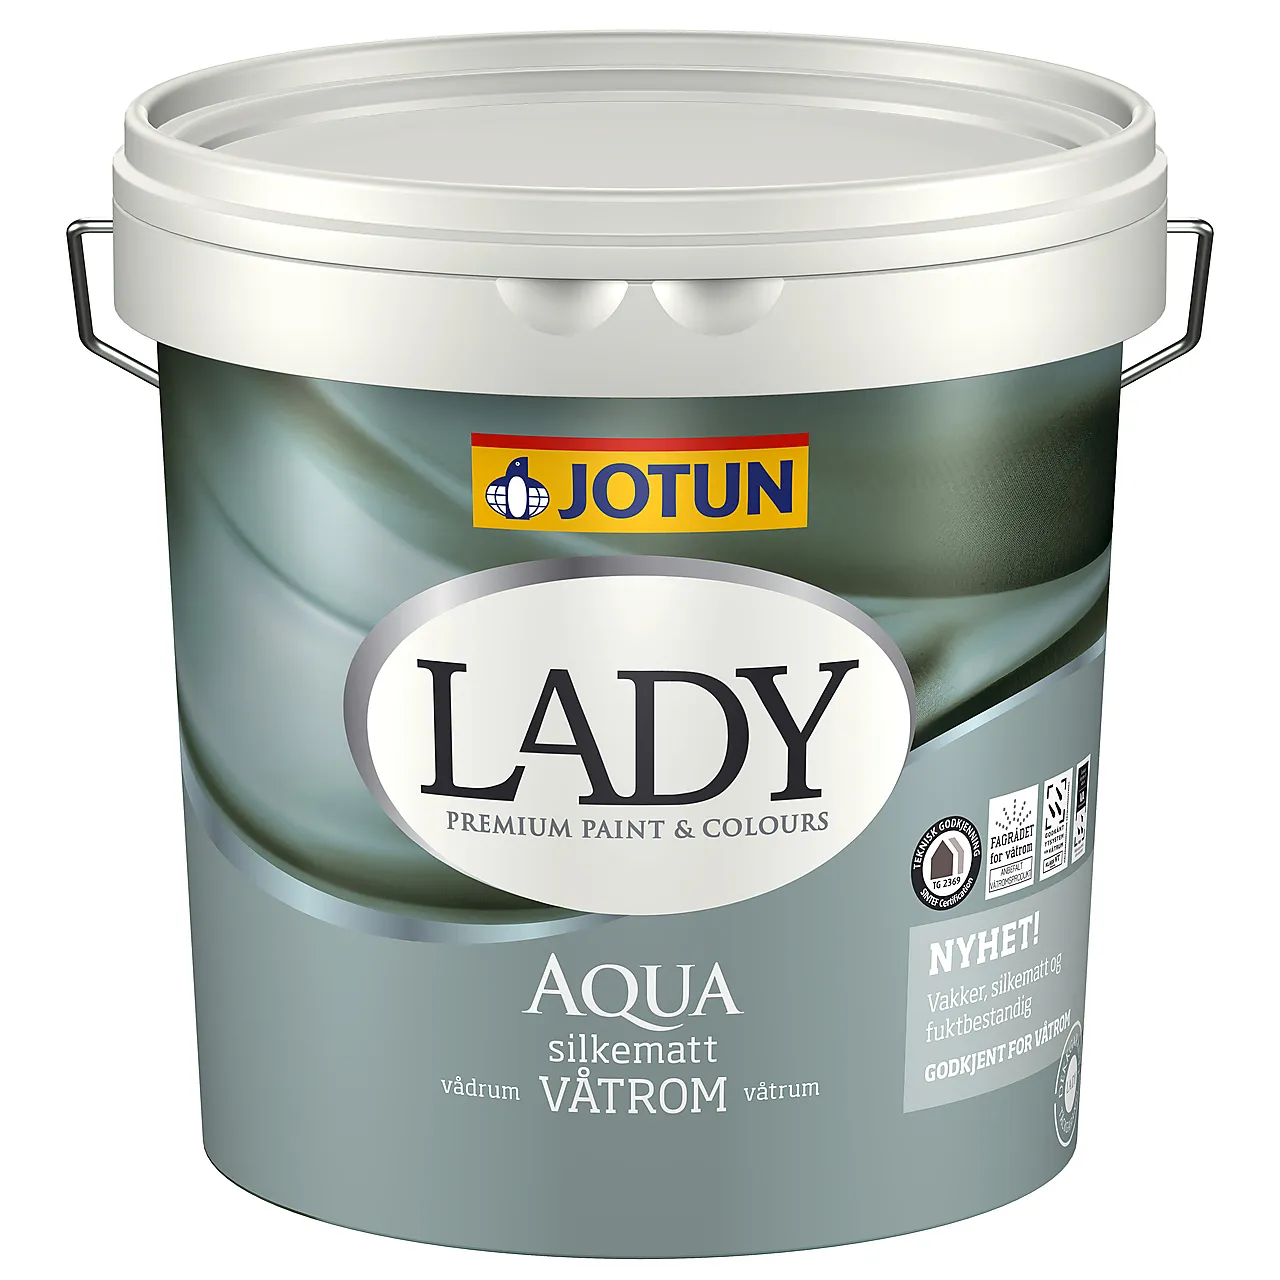 Lady Aqua a-base 2,7 liter